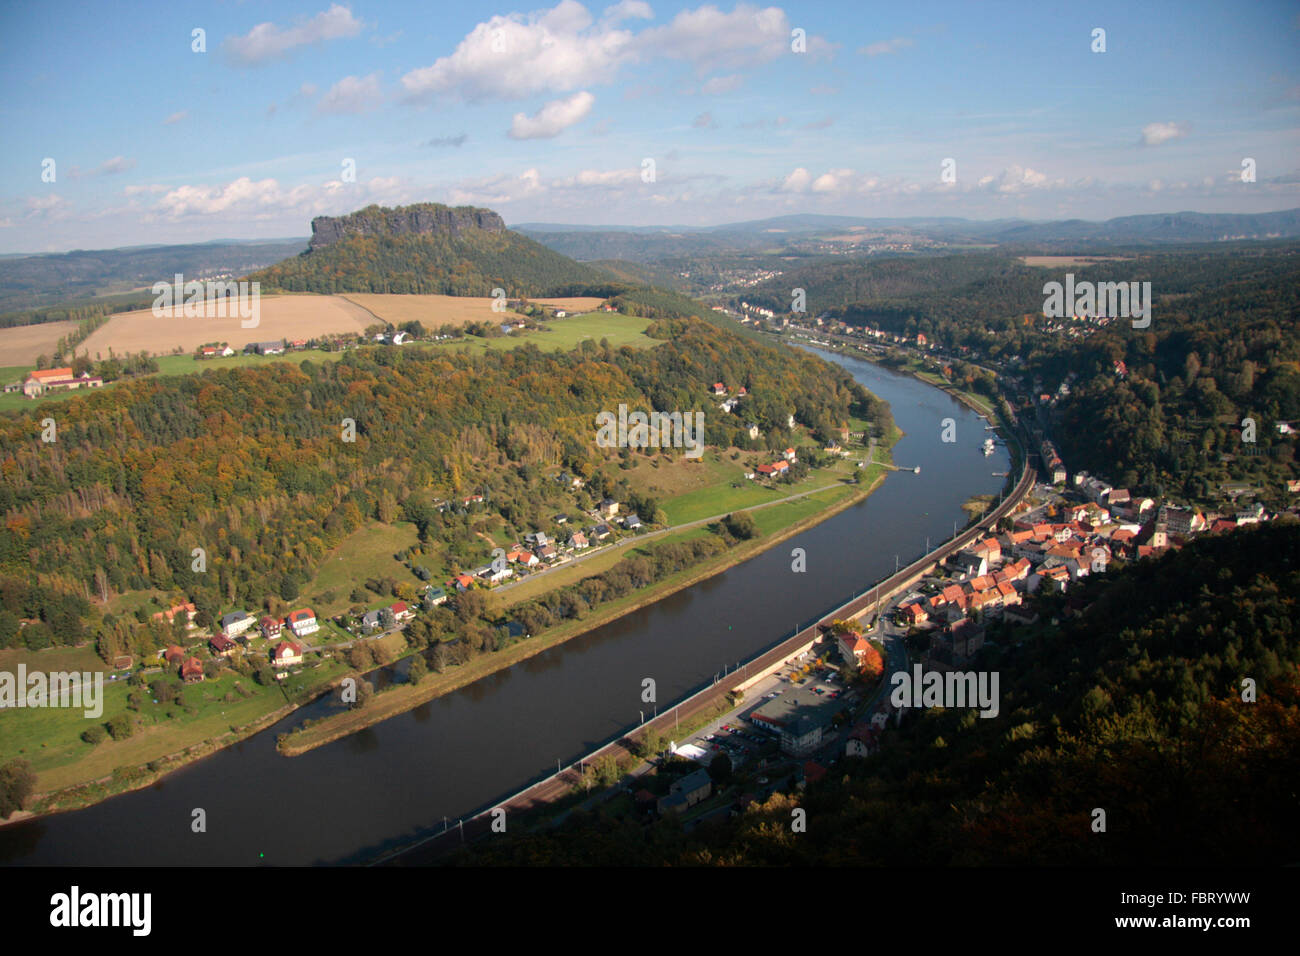 Lilienstein, Elbe von der Festung Koenigstein aus gesehen - Saechsische Schweiz. Stock Photo